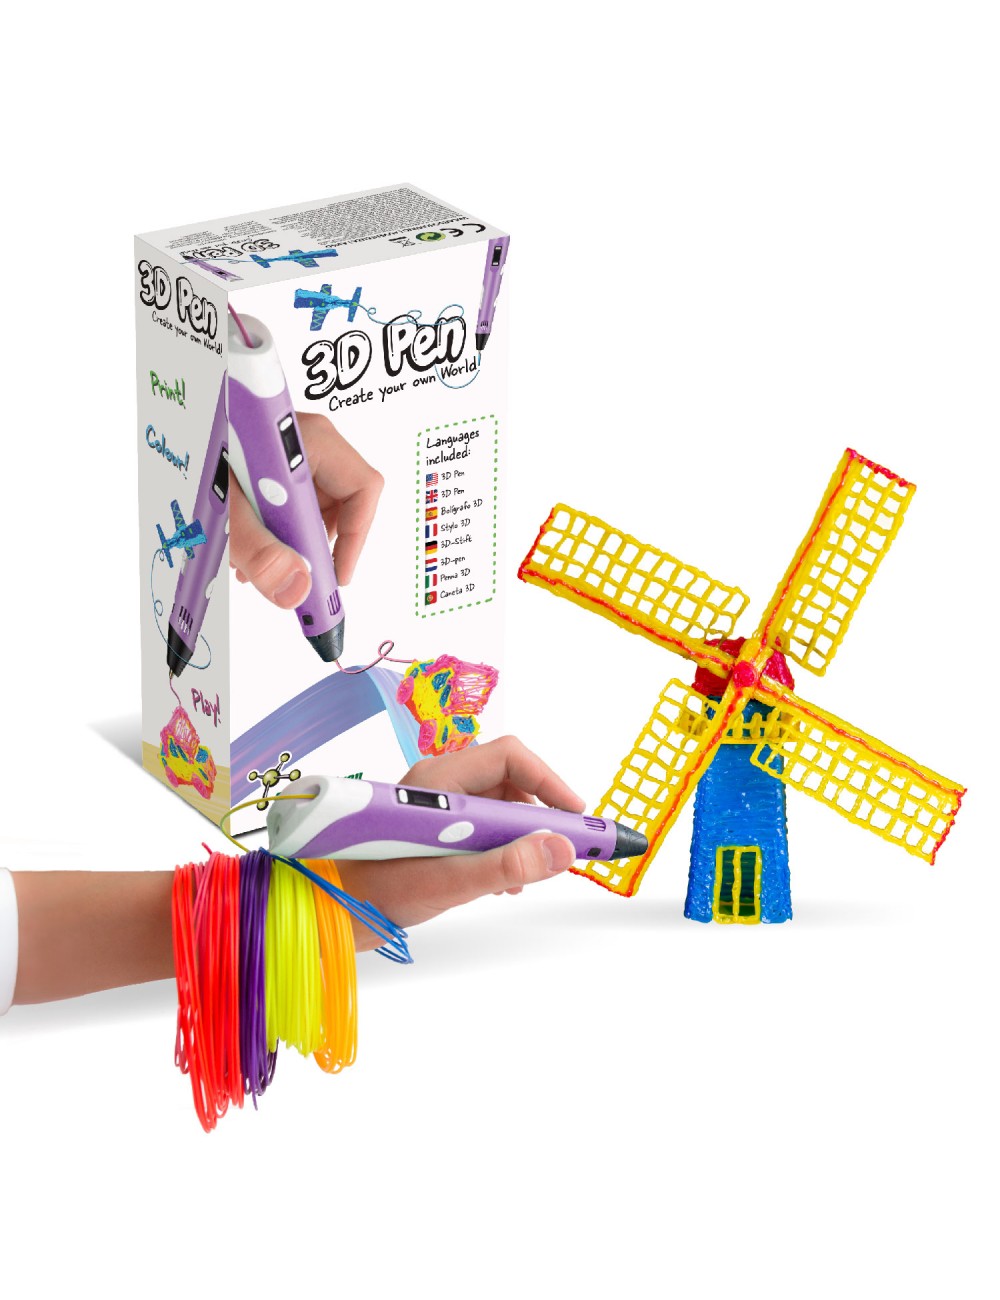 Stylo 3D pour enfants - Stylo d'impression 3D professionnel créatif avec 10  filaments de couleurs - Stylo de dessin 3D pour les vacances, Noël